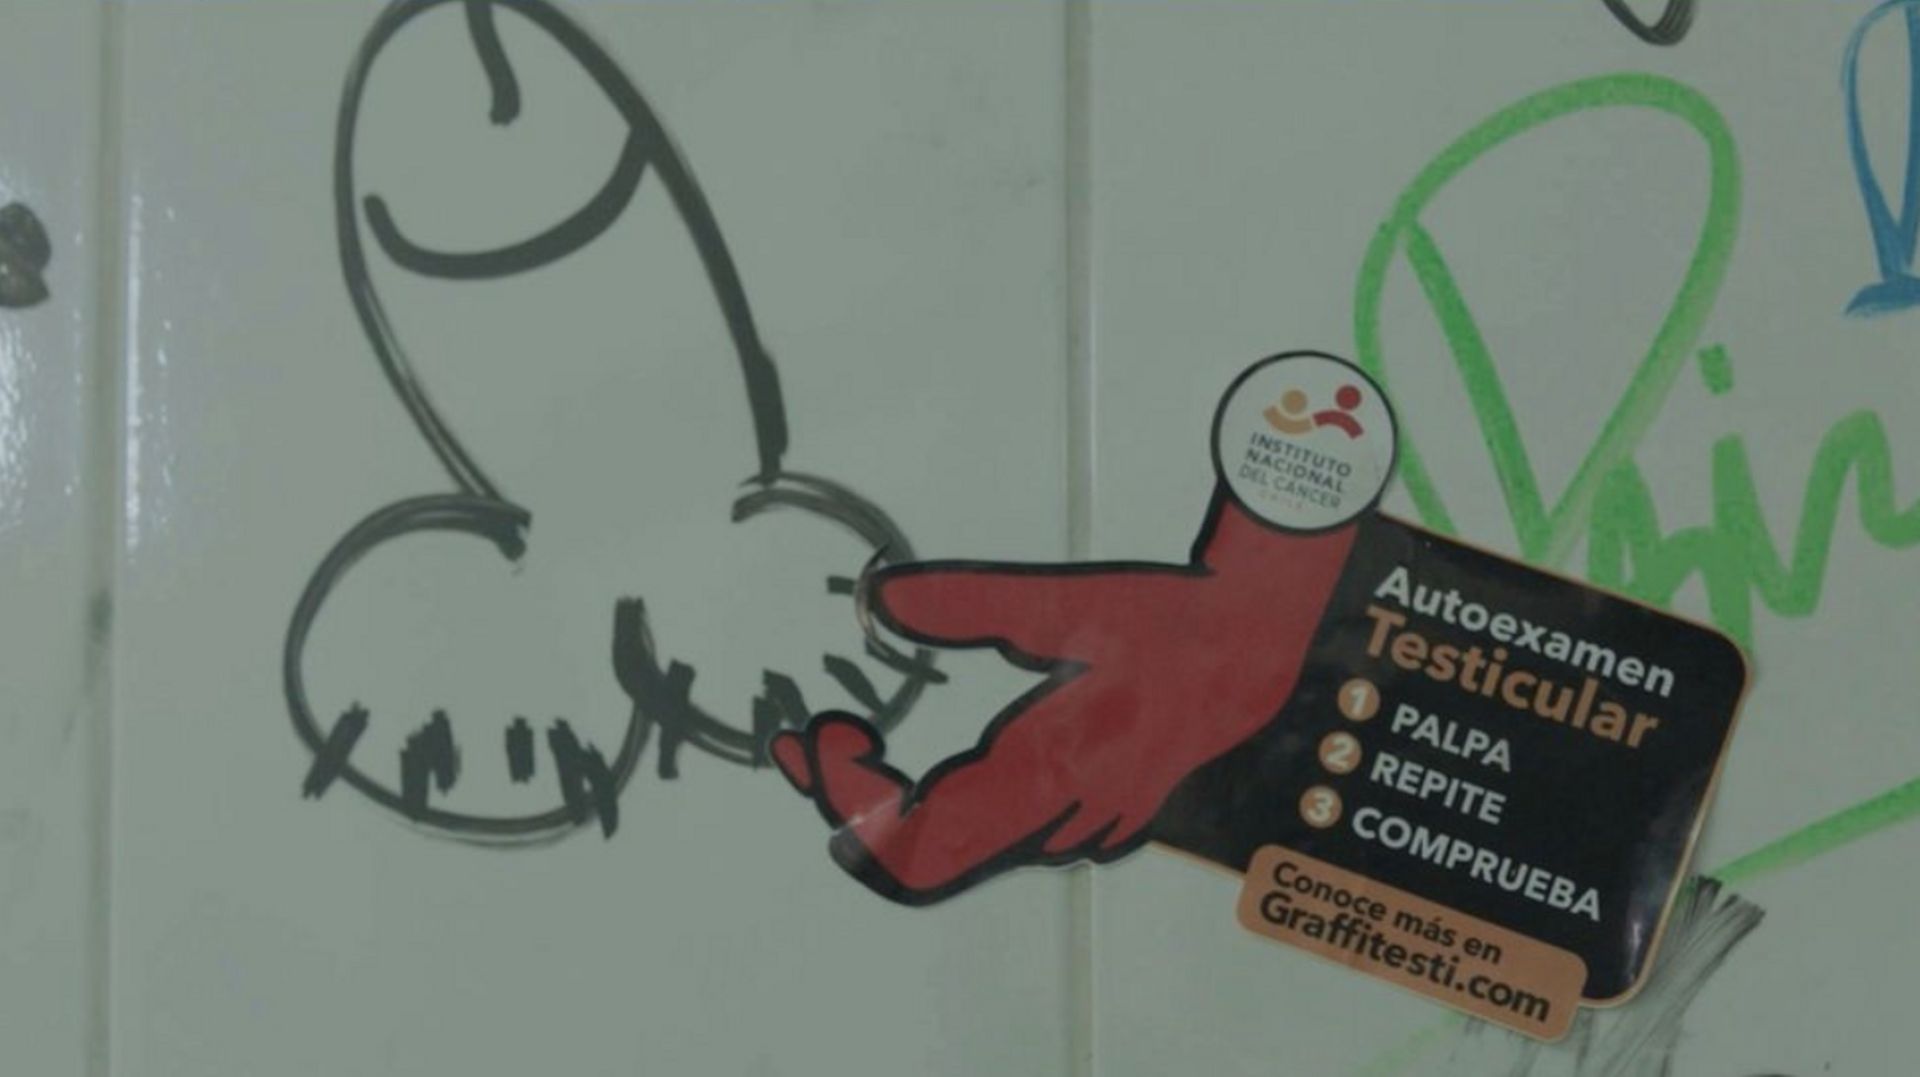 Cancer des testicules : les graffitis de pénis utilisés pour sensibiliser les hommes